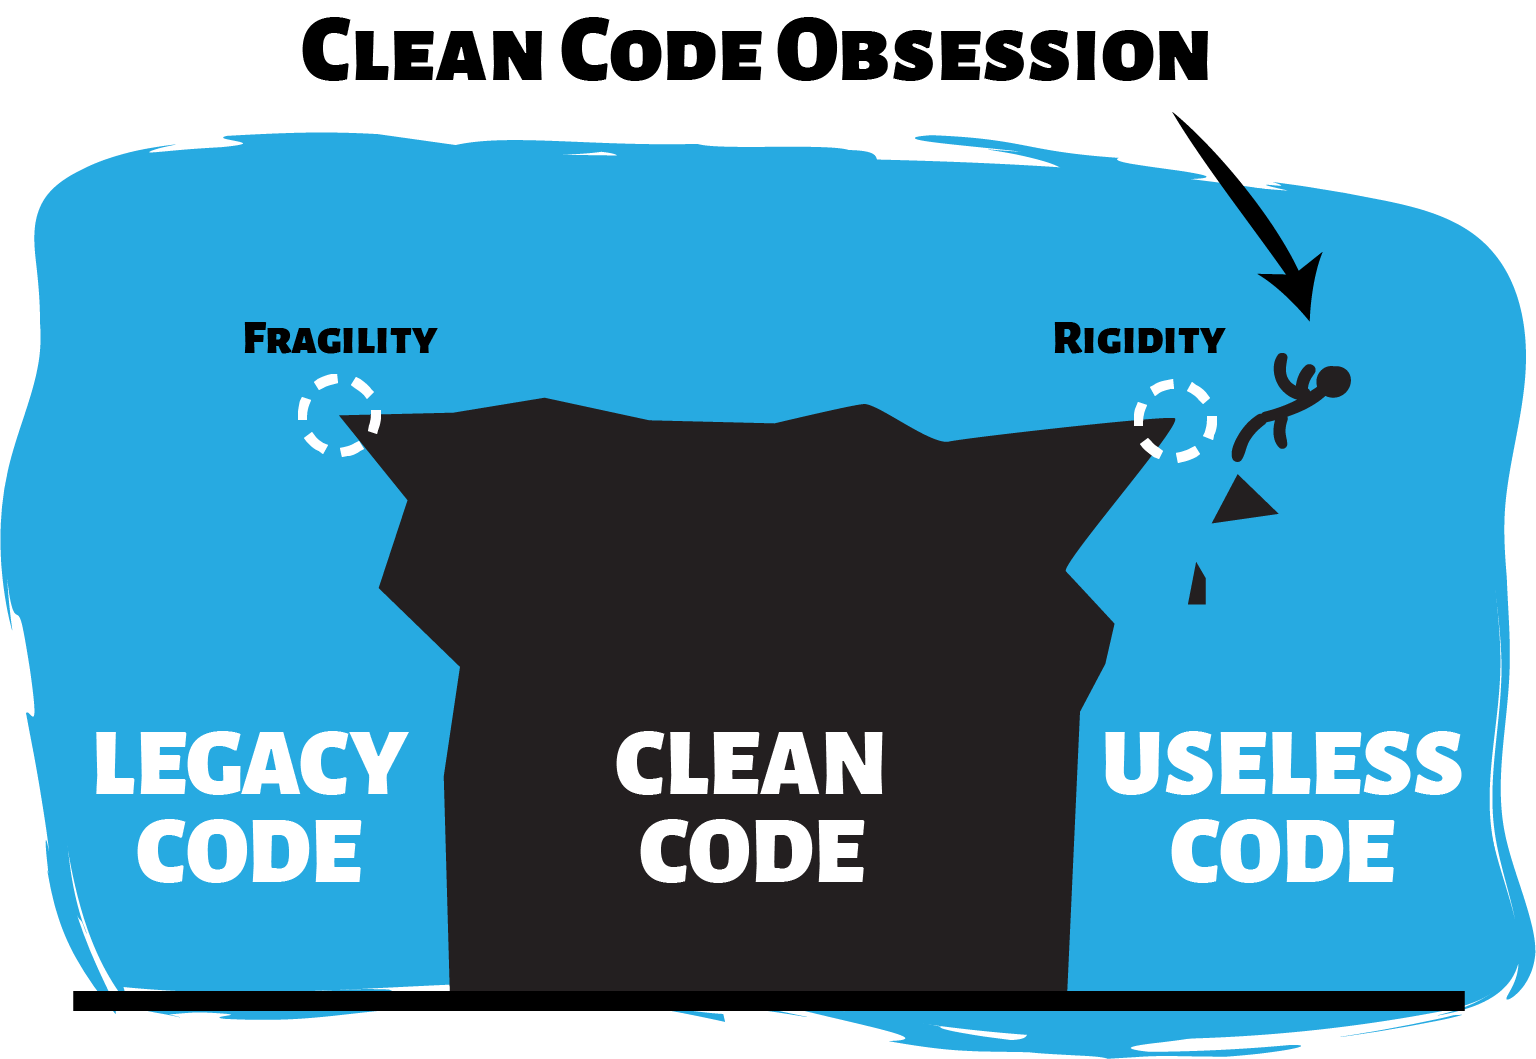 A peak representing clean code